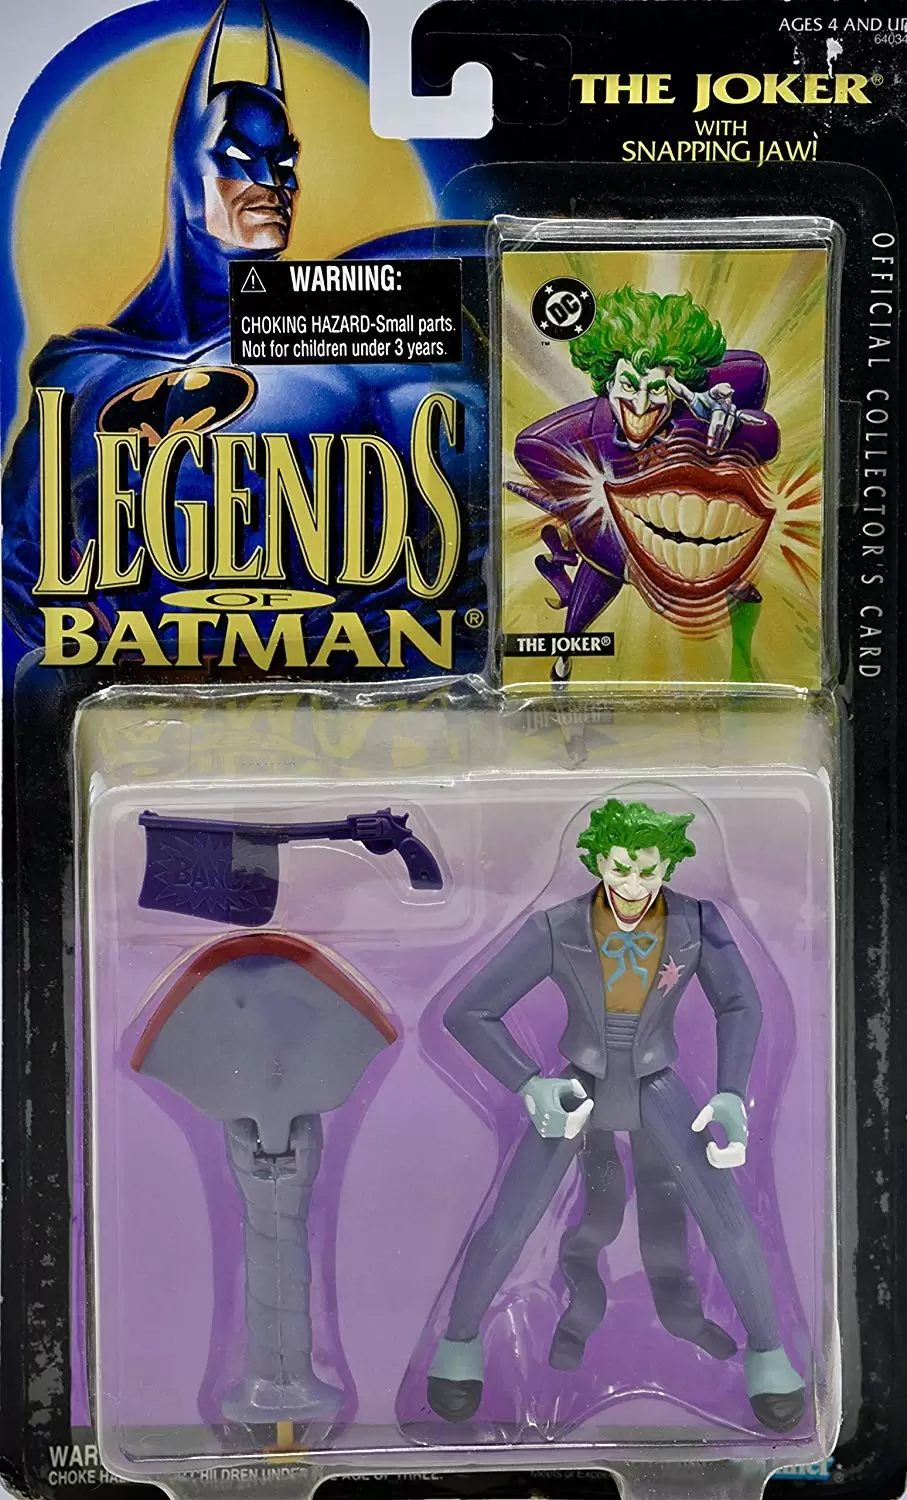 Legends of Batman - The Joker